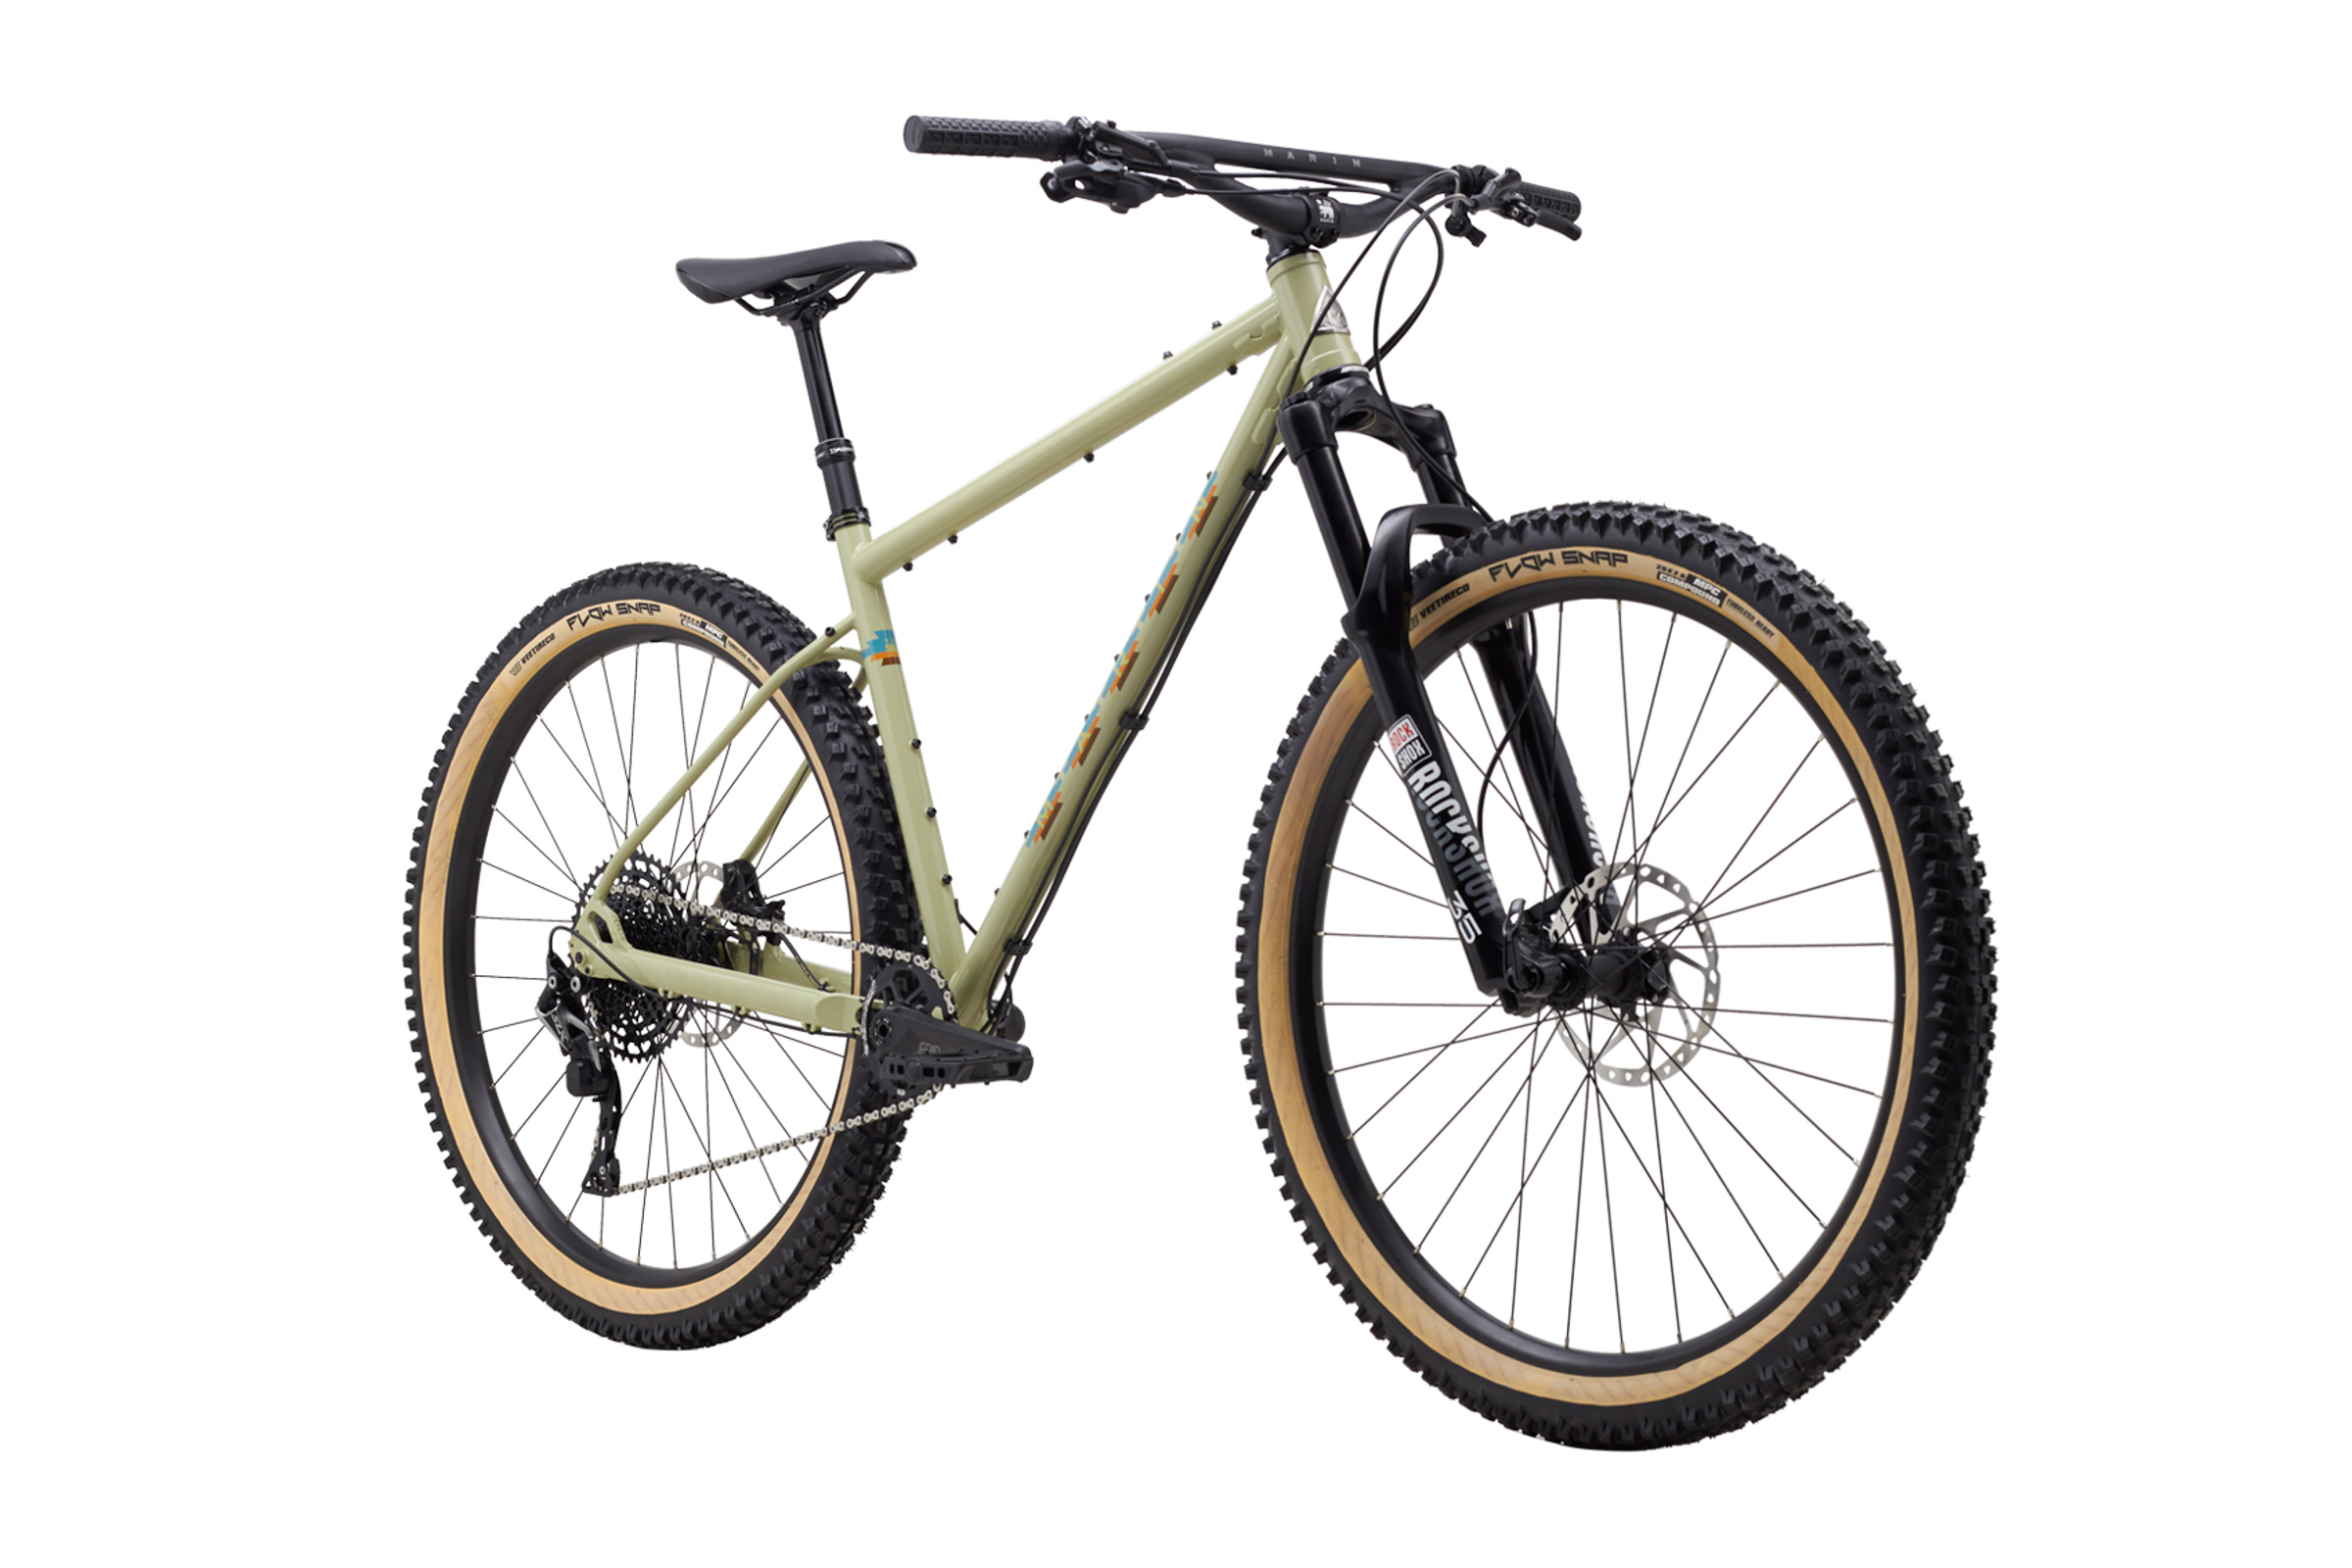 marin pine mountain 27.5 hardtail bike